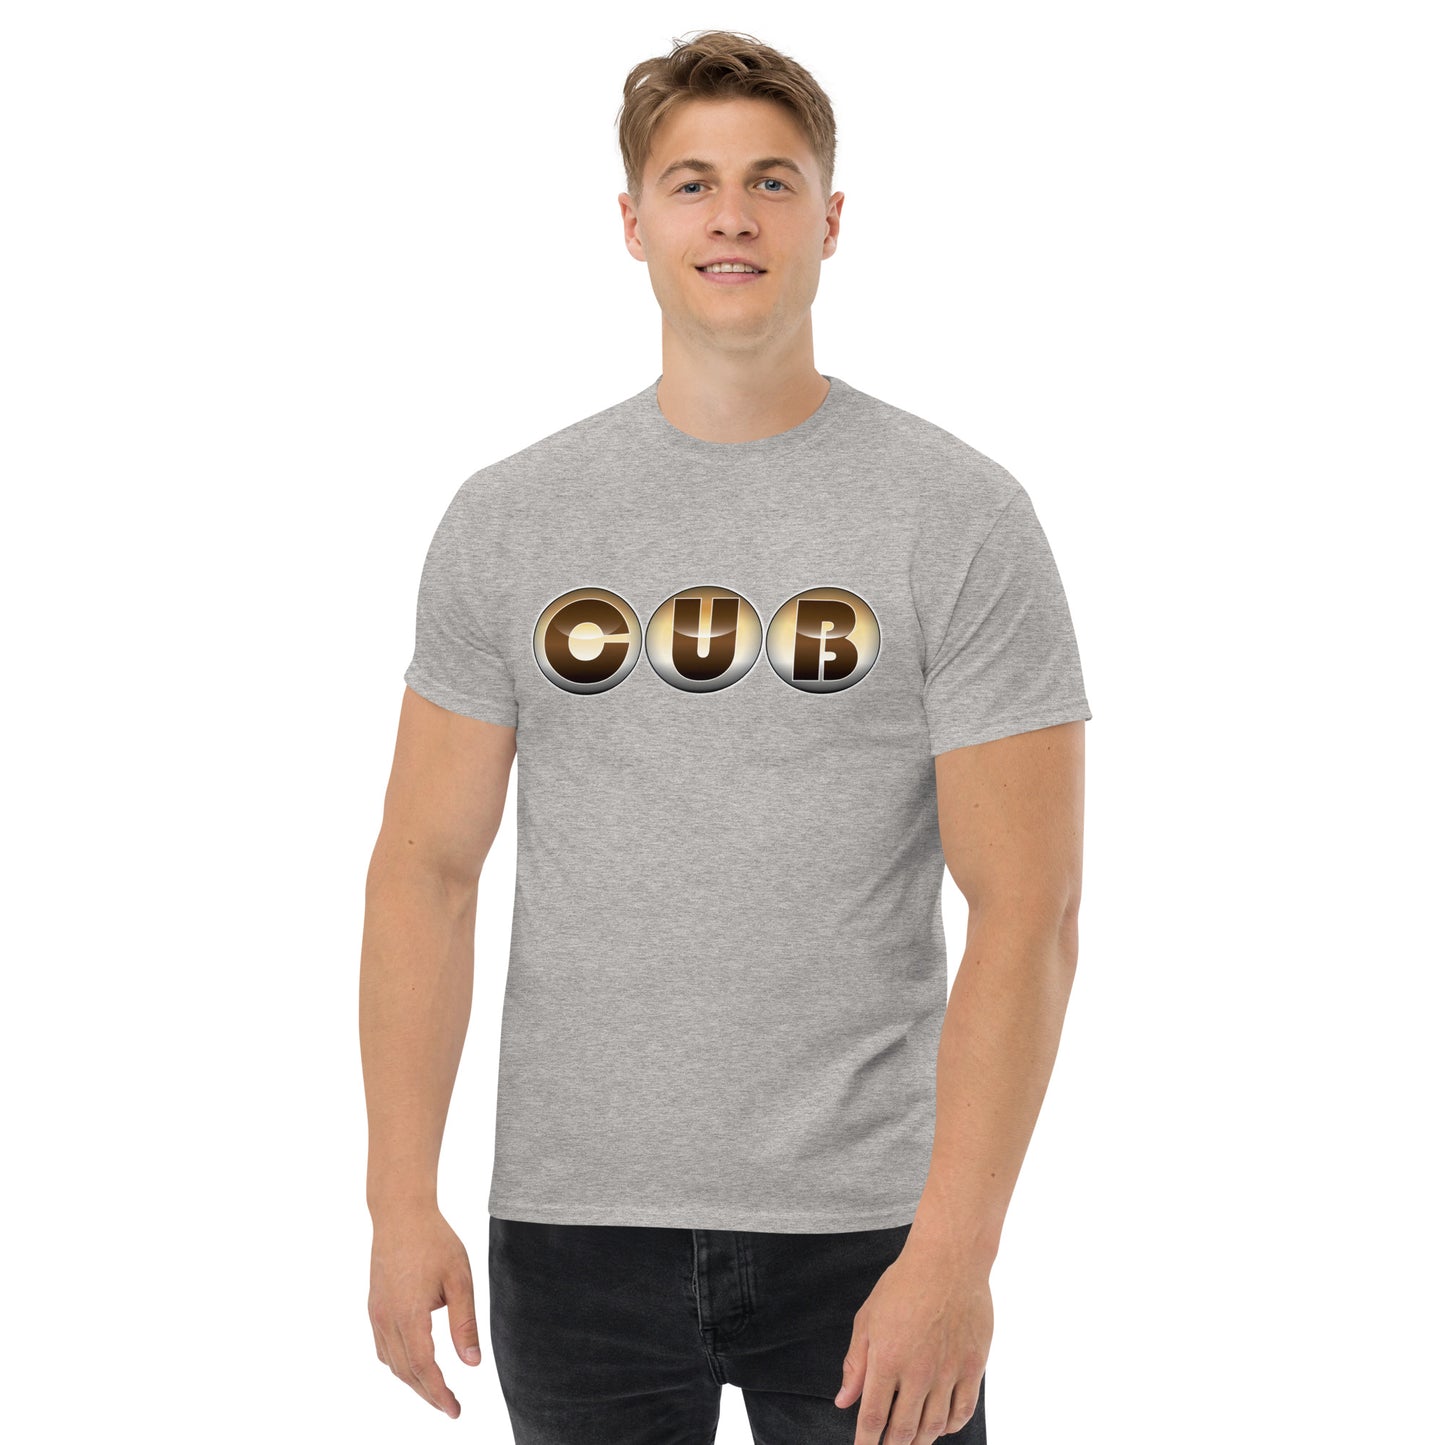 Cub Men’s T-Shirt